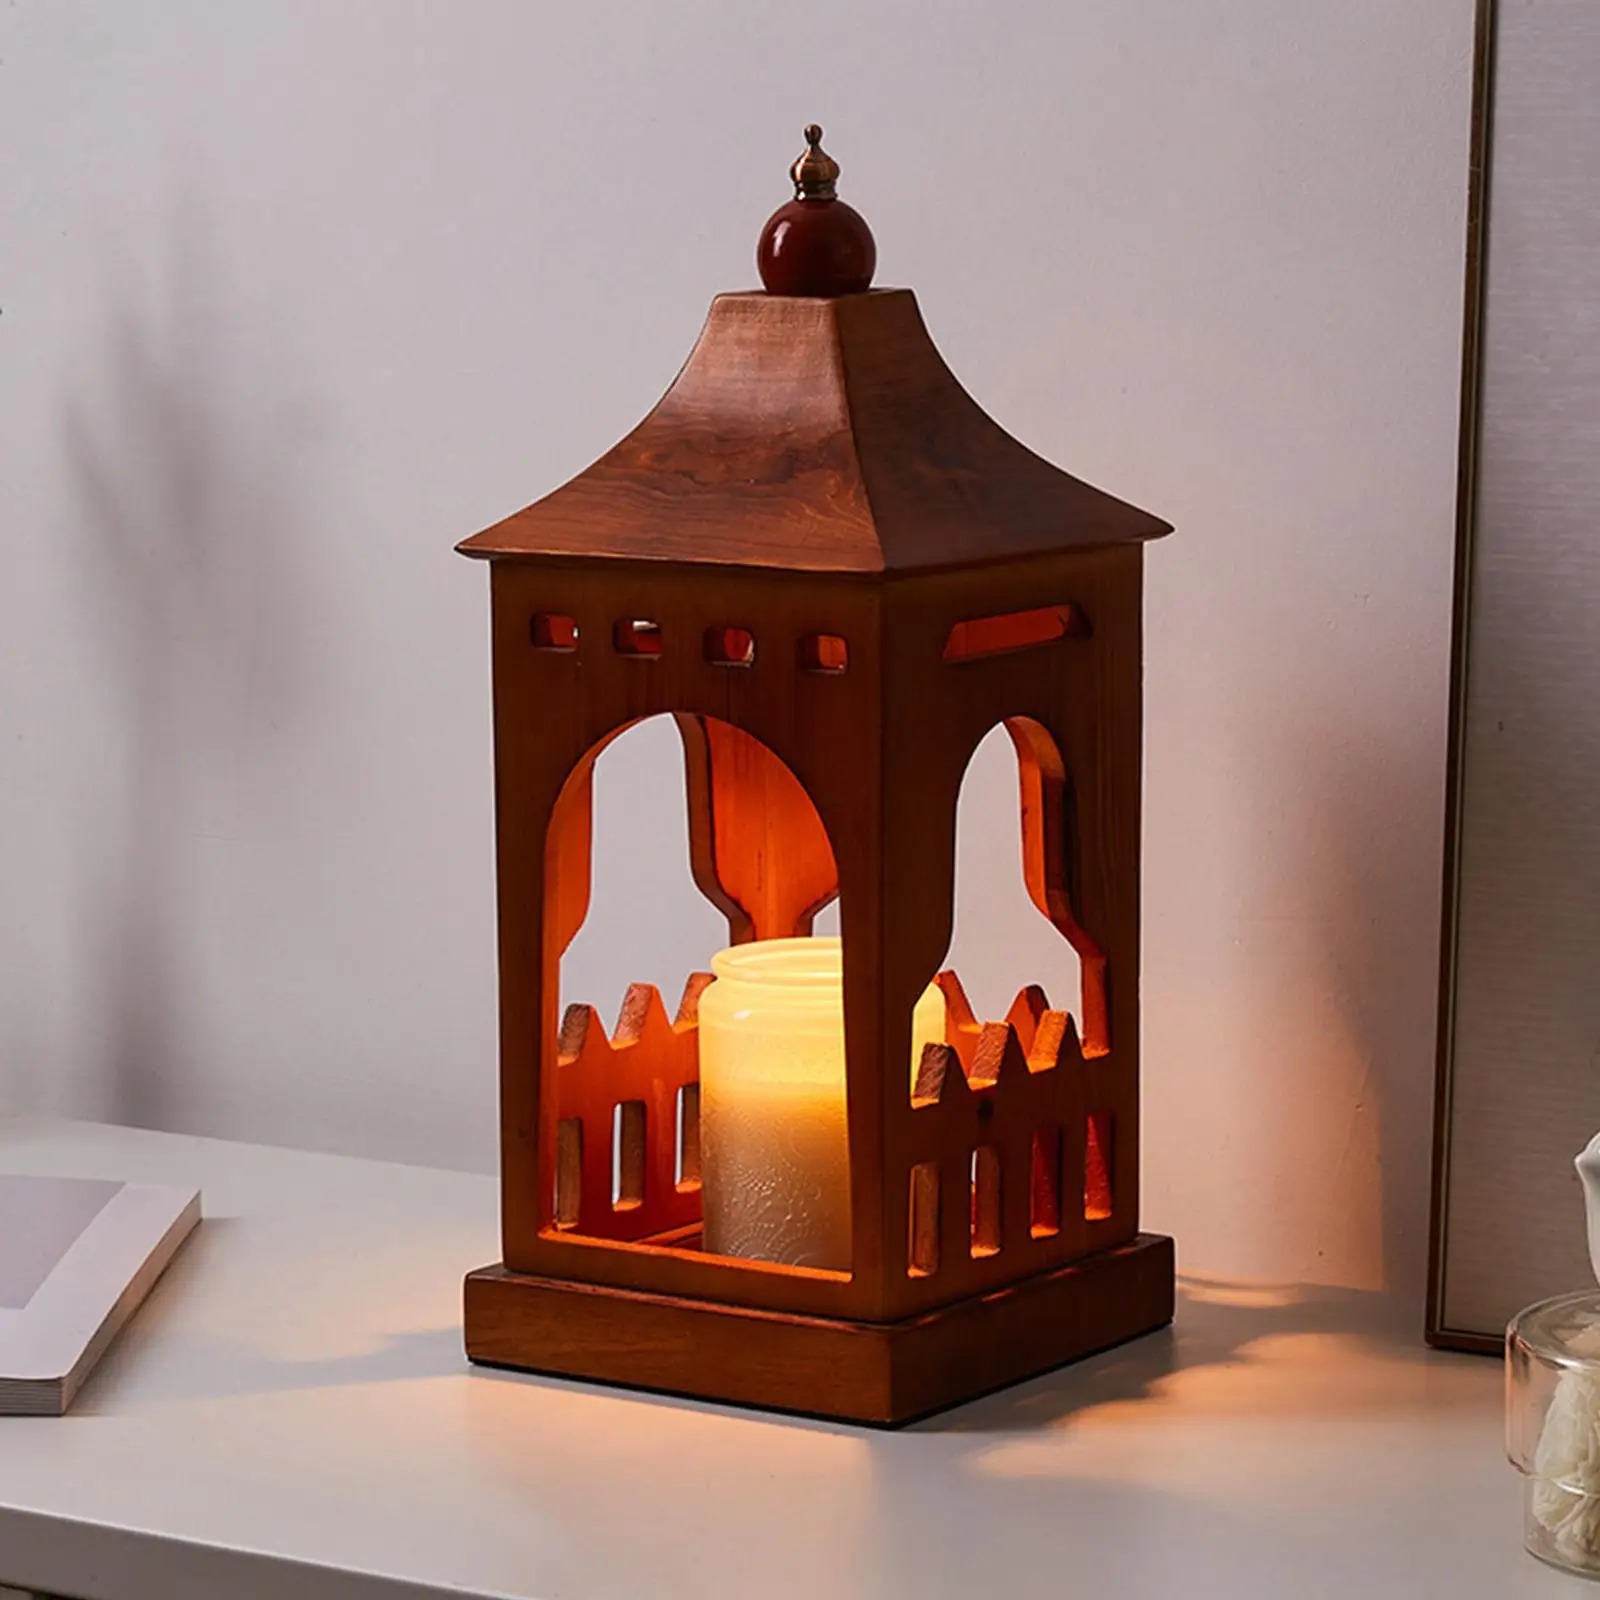 Wooden Candle Warmer Decor Fragrance Creative Burner Melting Lamp Fragrance Light for Office Bedside Table Home